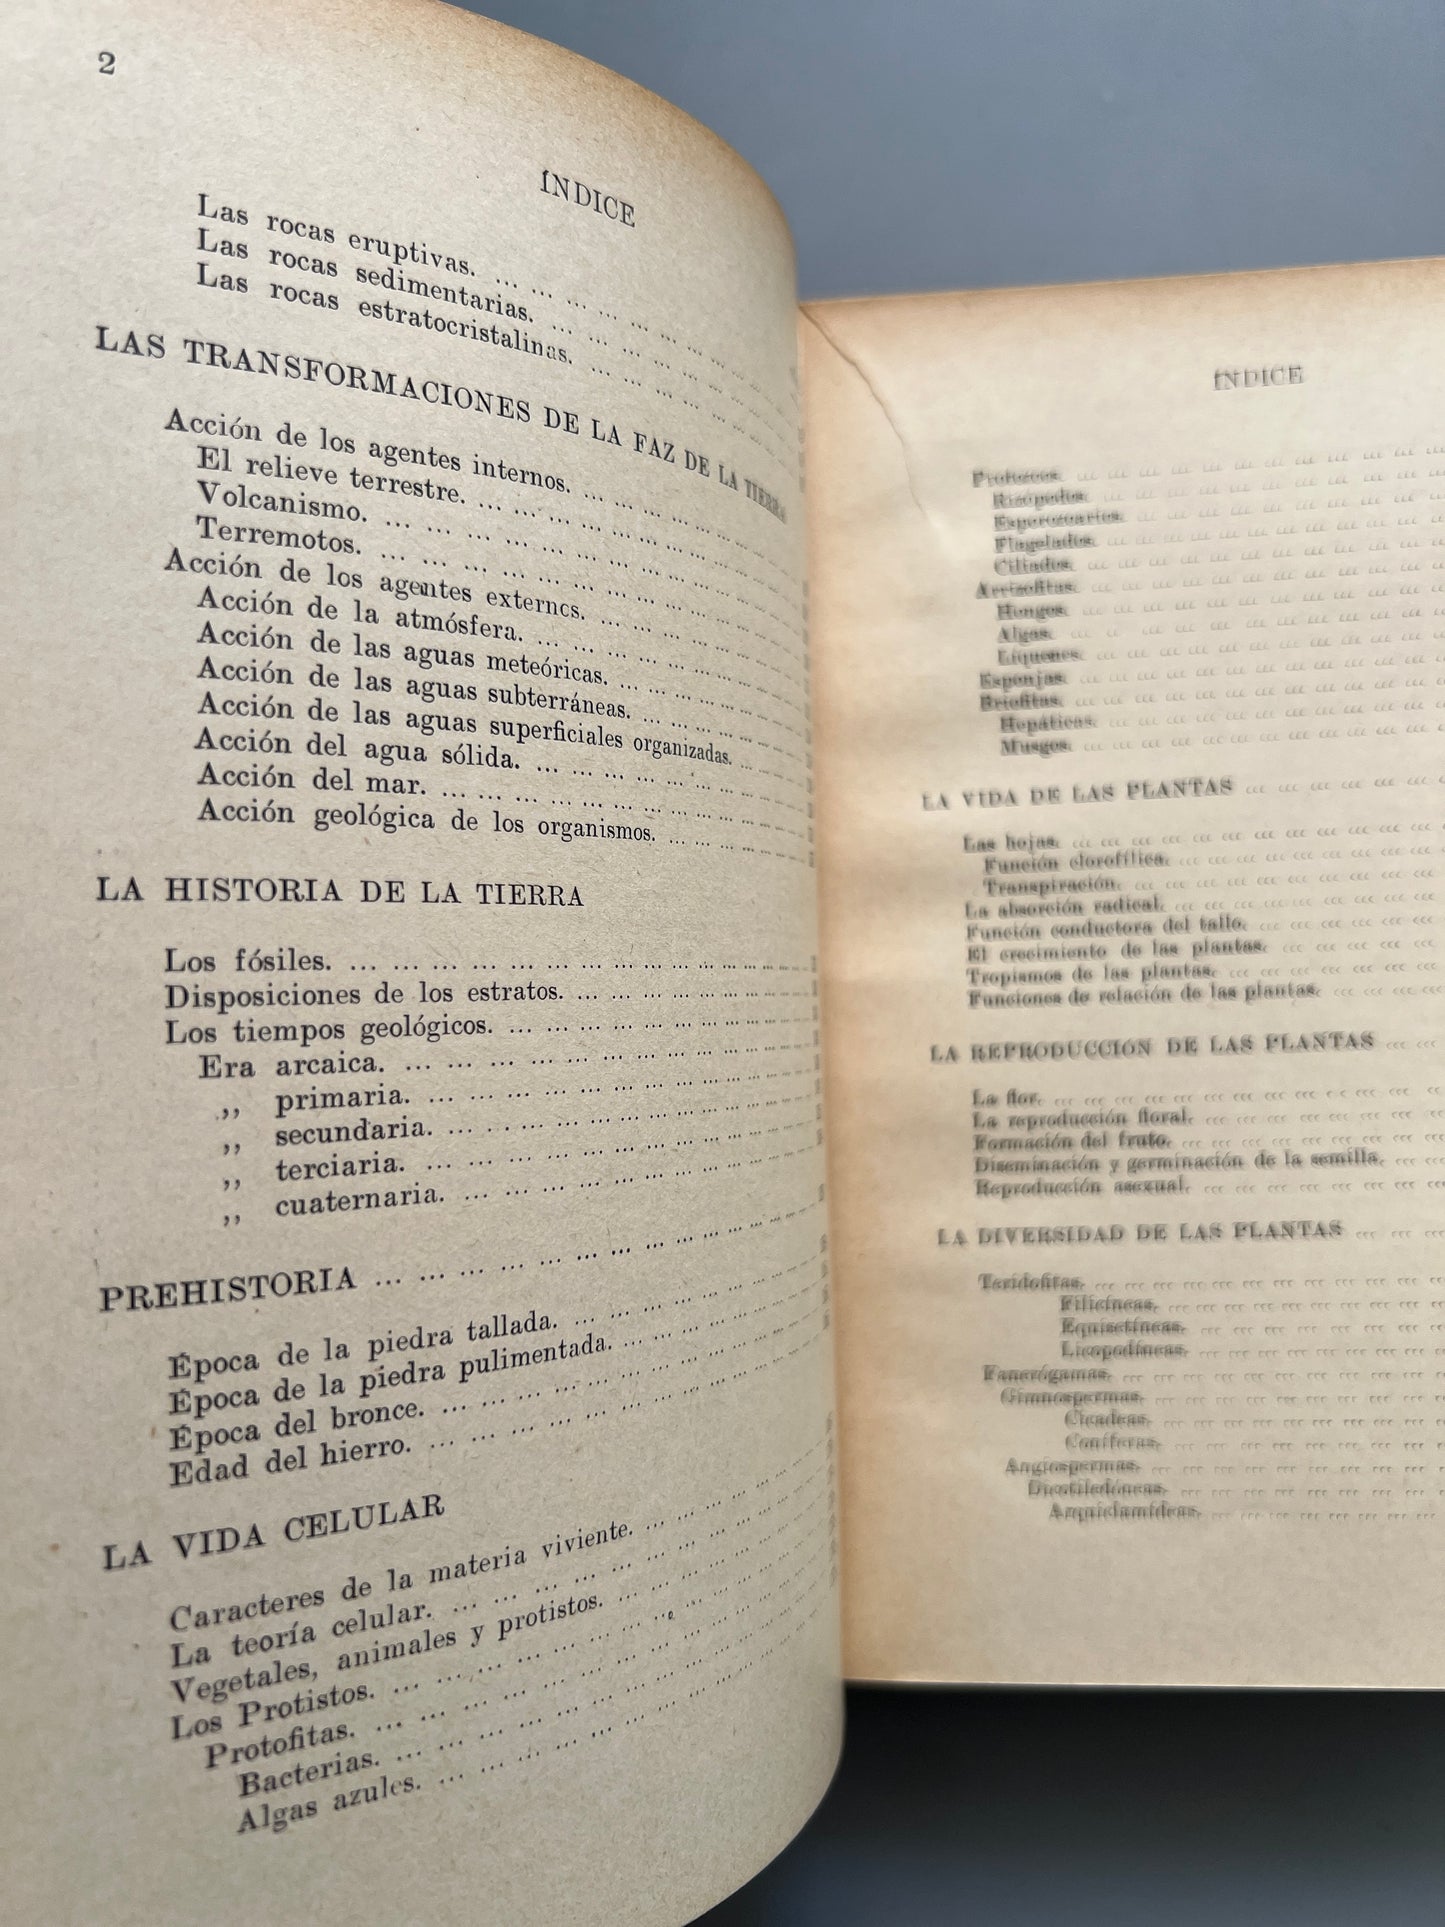 Historia natural, Celso Arévalo - Editorial Ramón Sopena, 1935